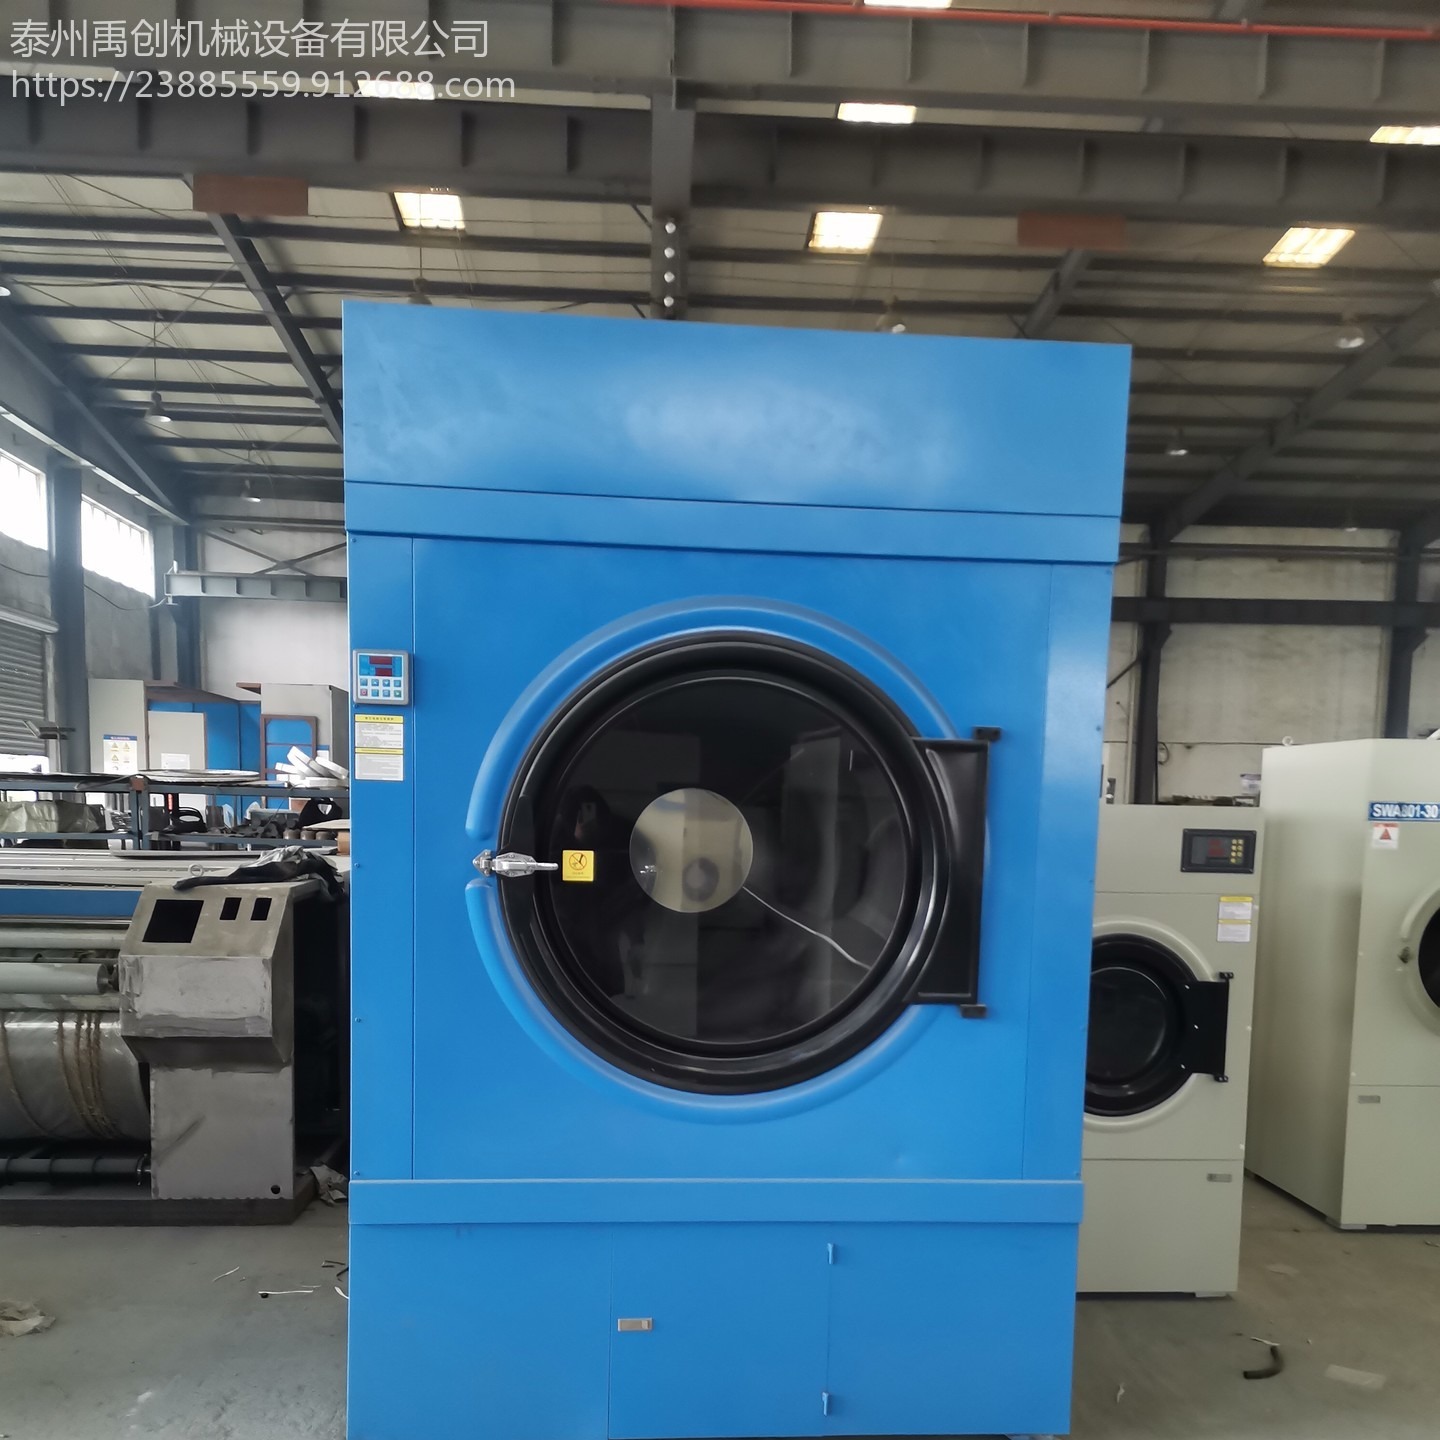 泰州江泰120公斤型摇粒烘干机 干衣机 蒸汽烘箱 干衣机 水洗厂烘干设备图片